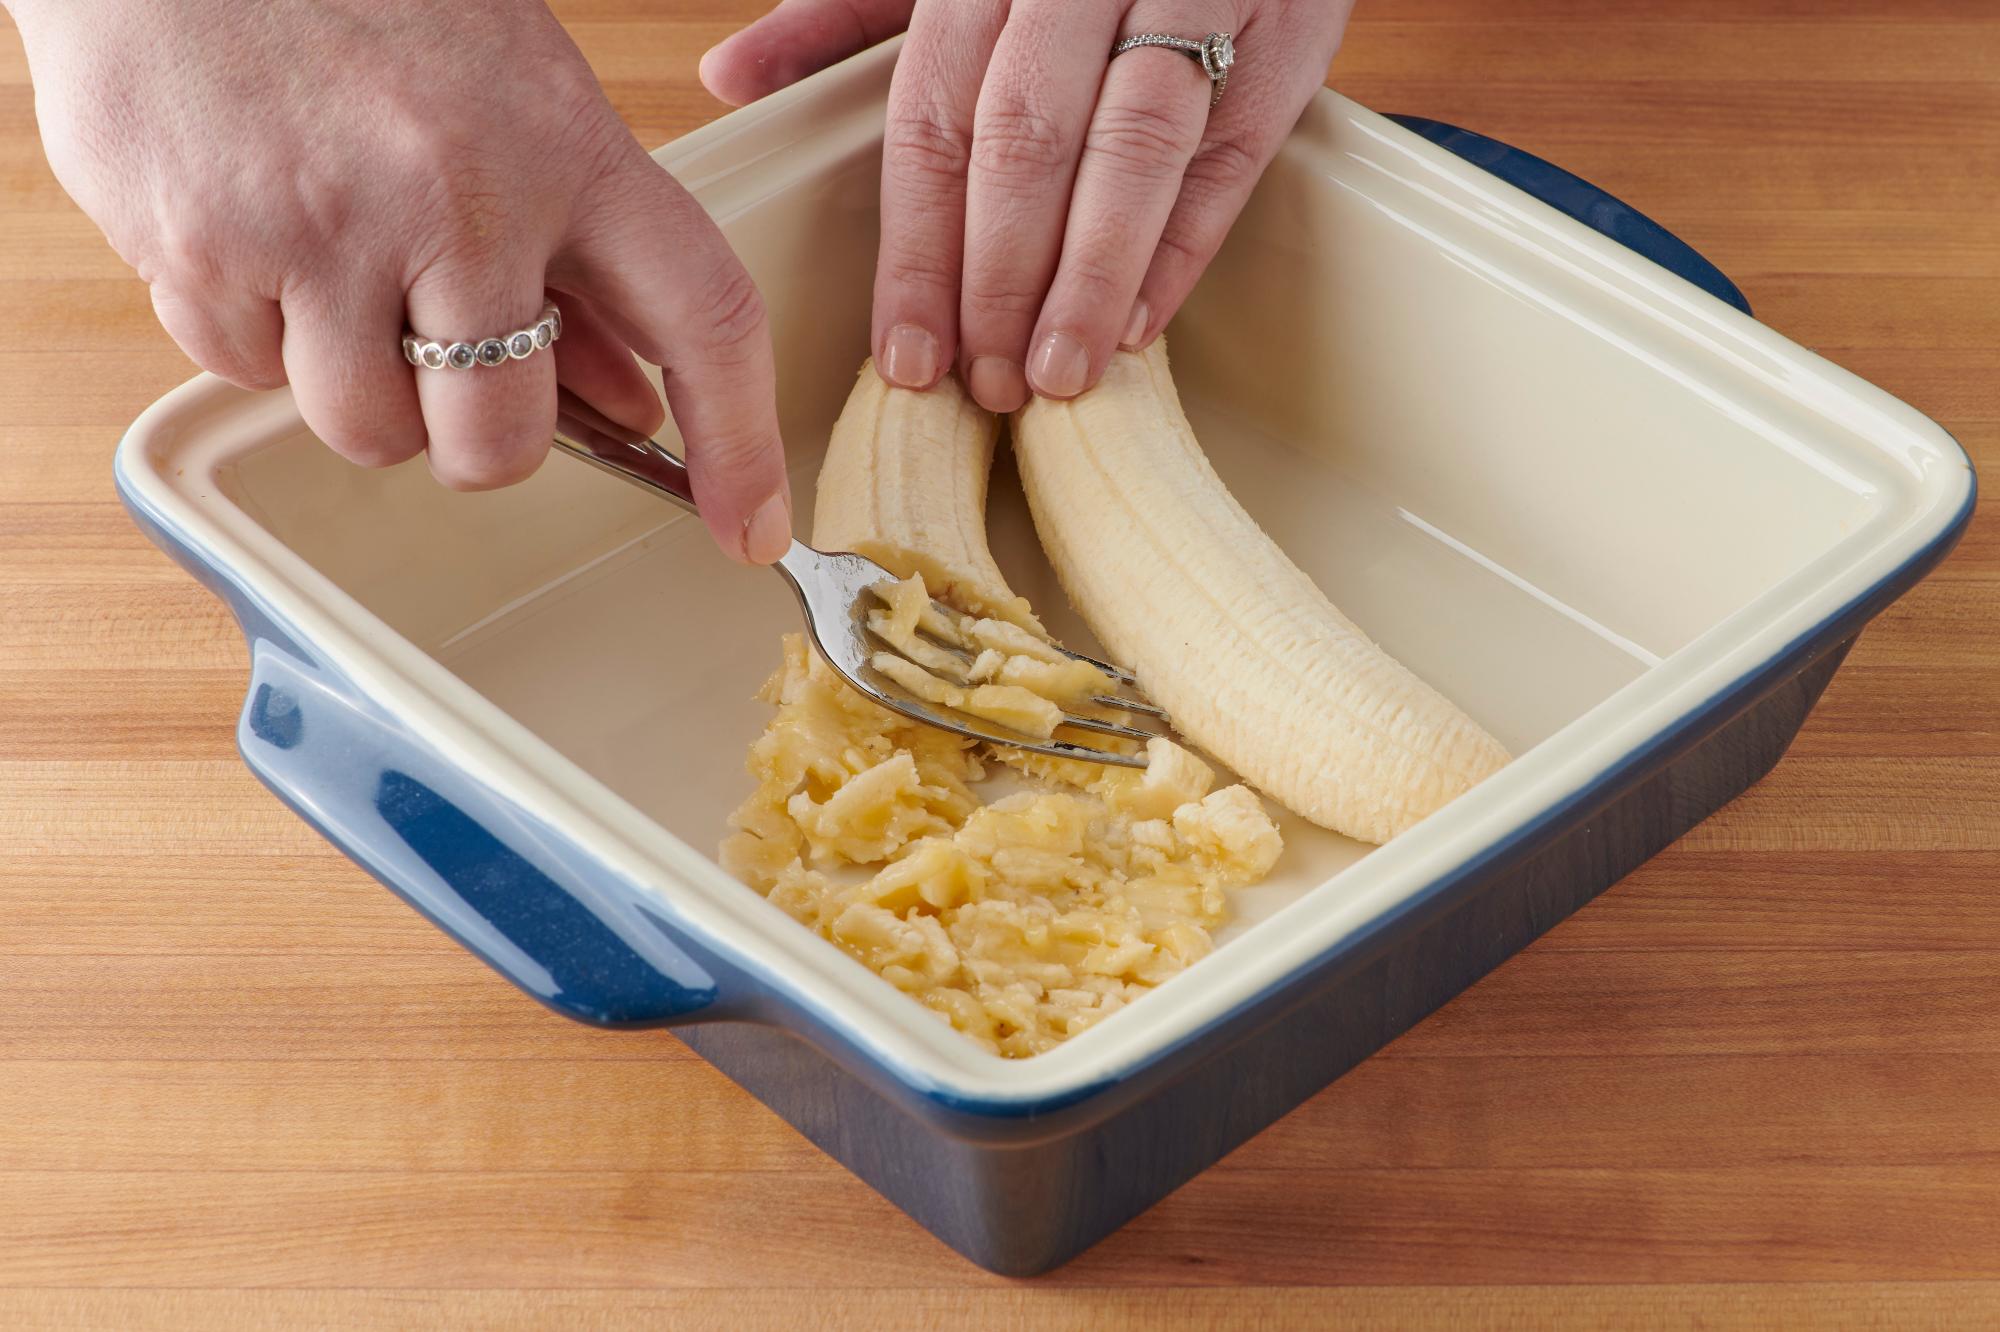 Mashing the banana into the pan.